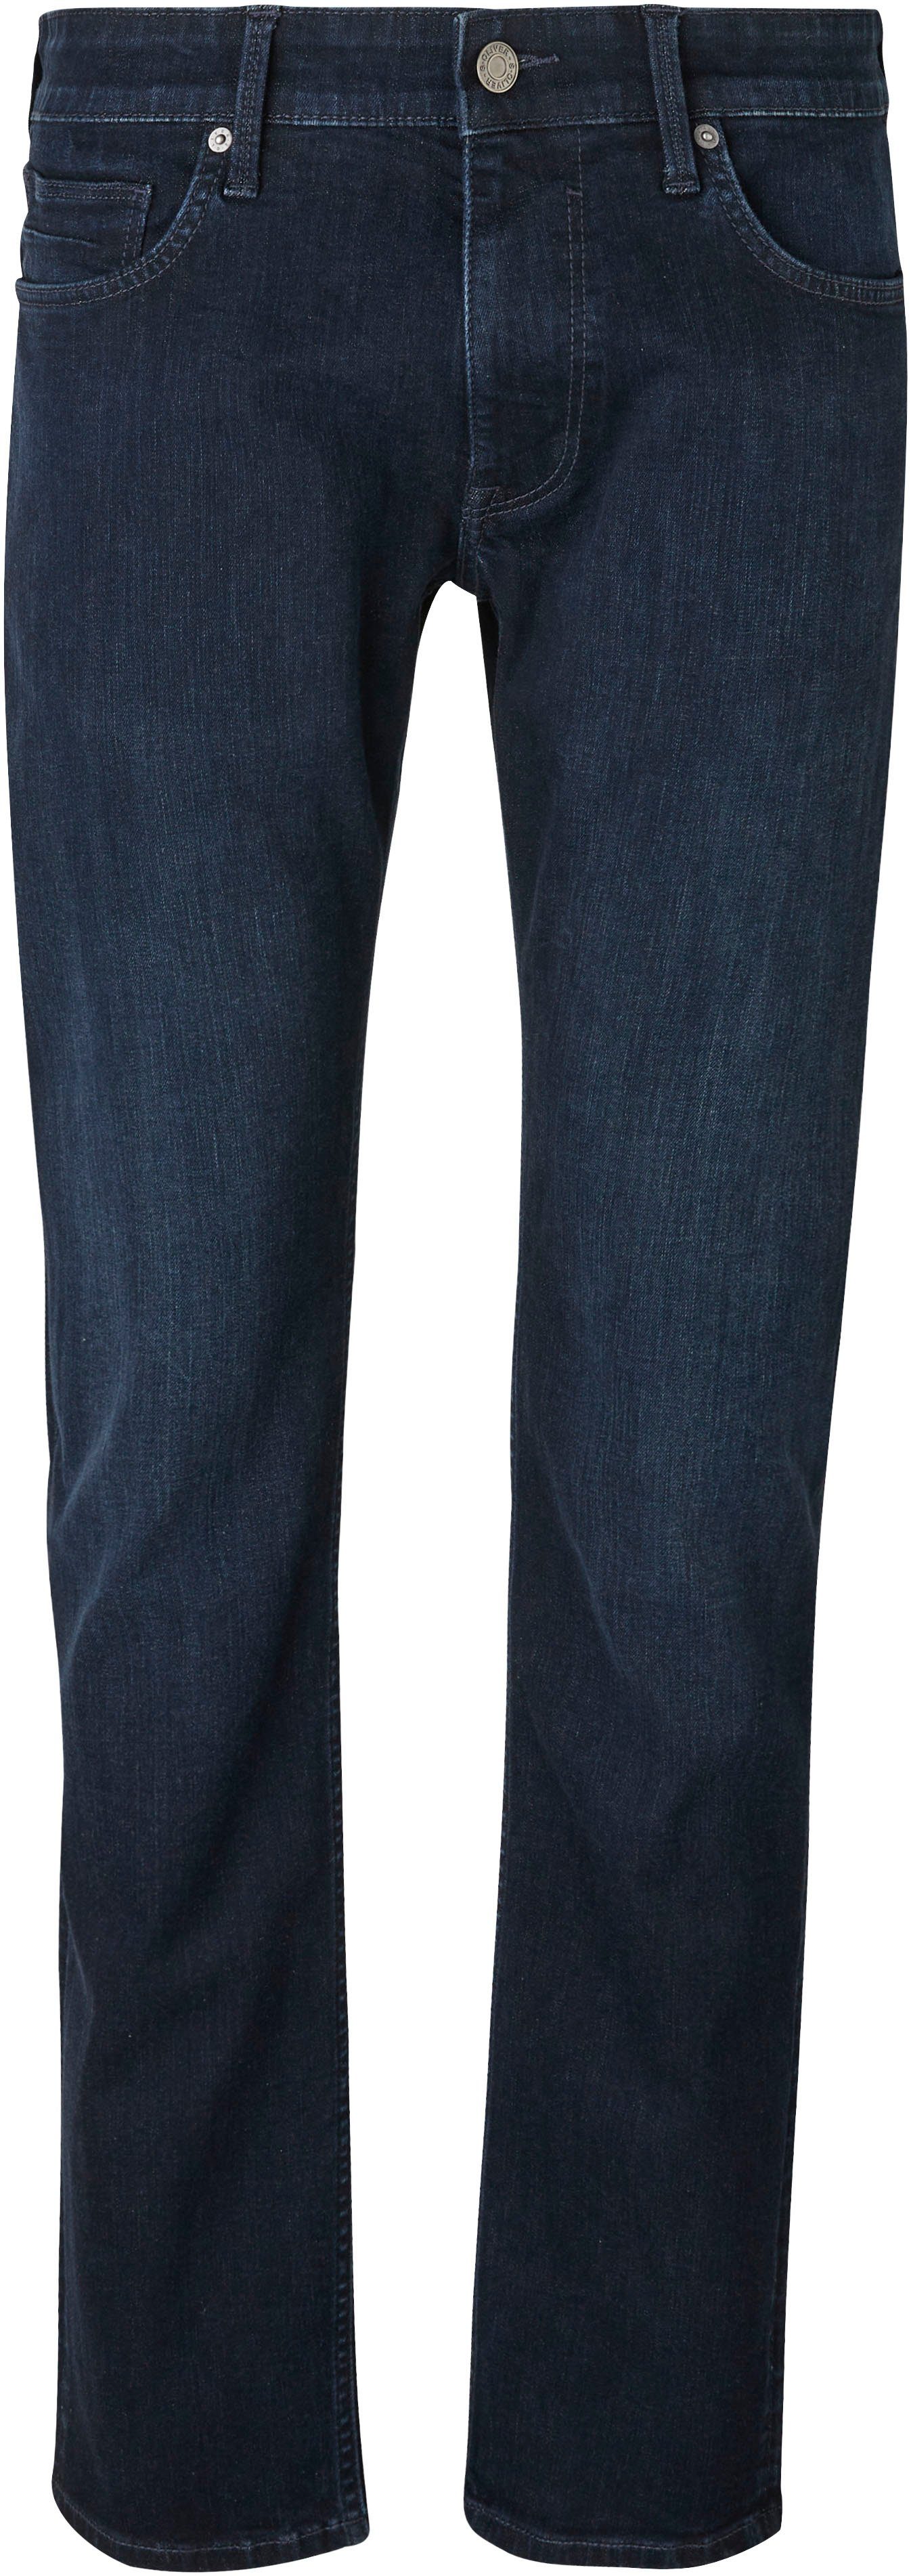 s.Oliver Bequeme Jeans mit Gesäß- und Eingrifftaschen dark blue 32